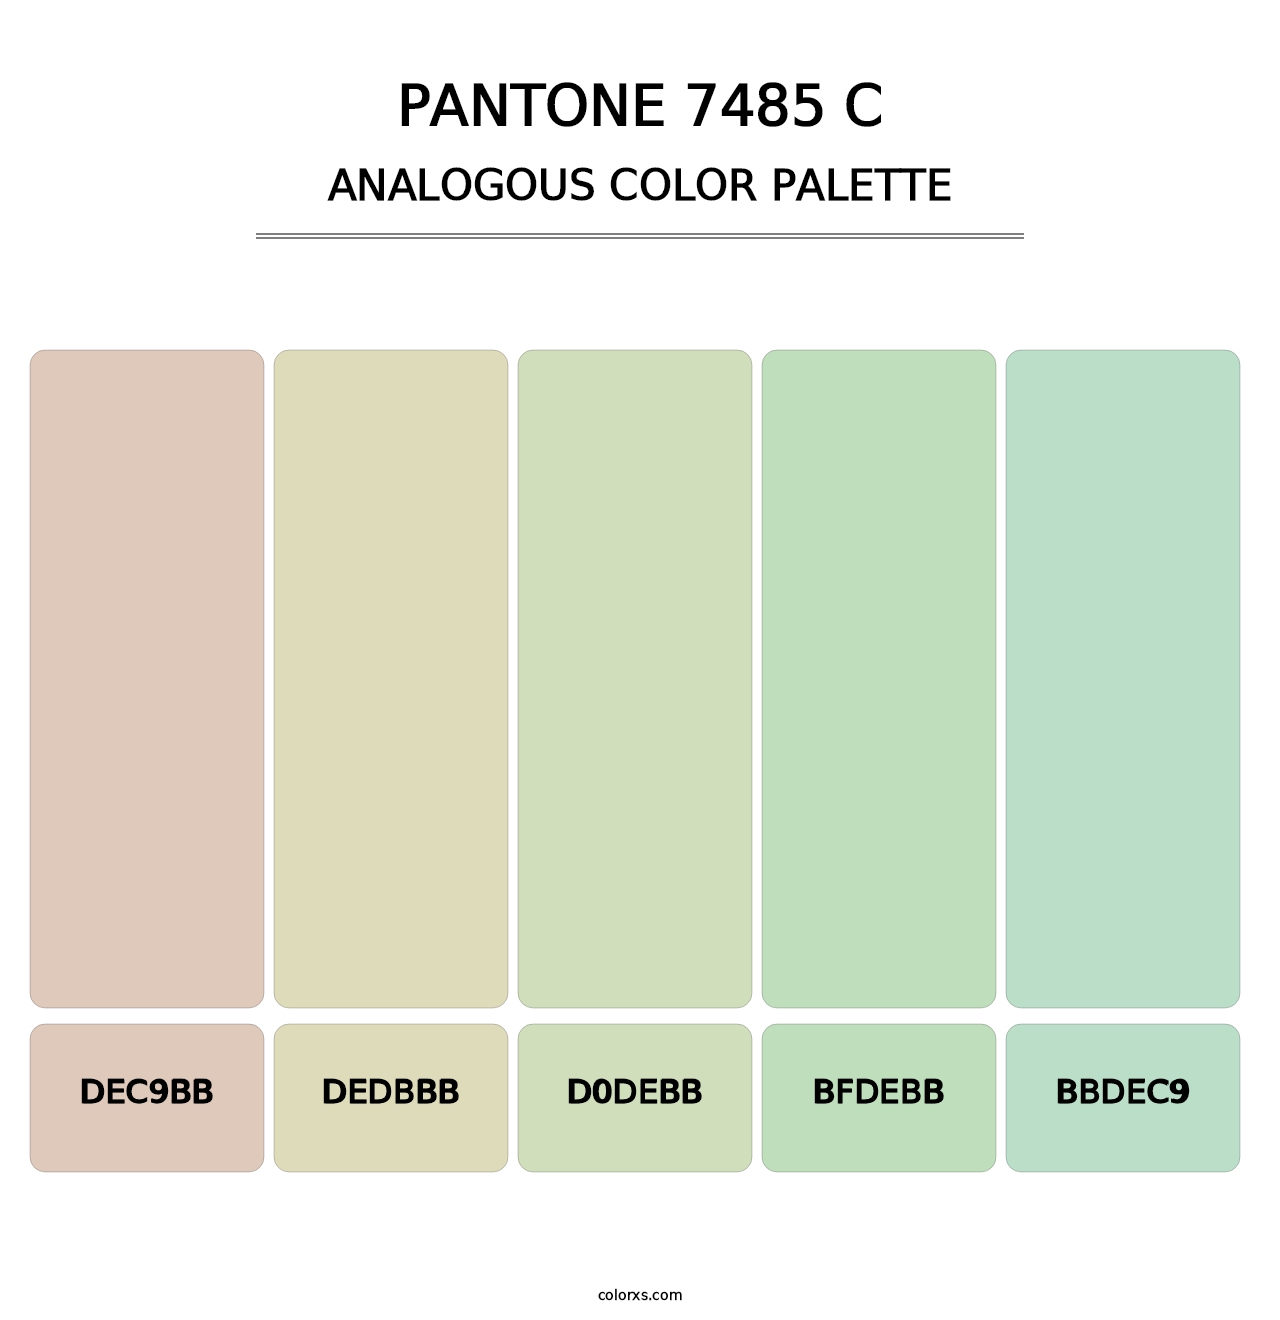 PANTONE 7485 C - Analogous Color Palette